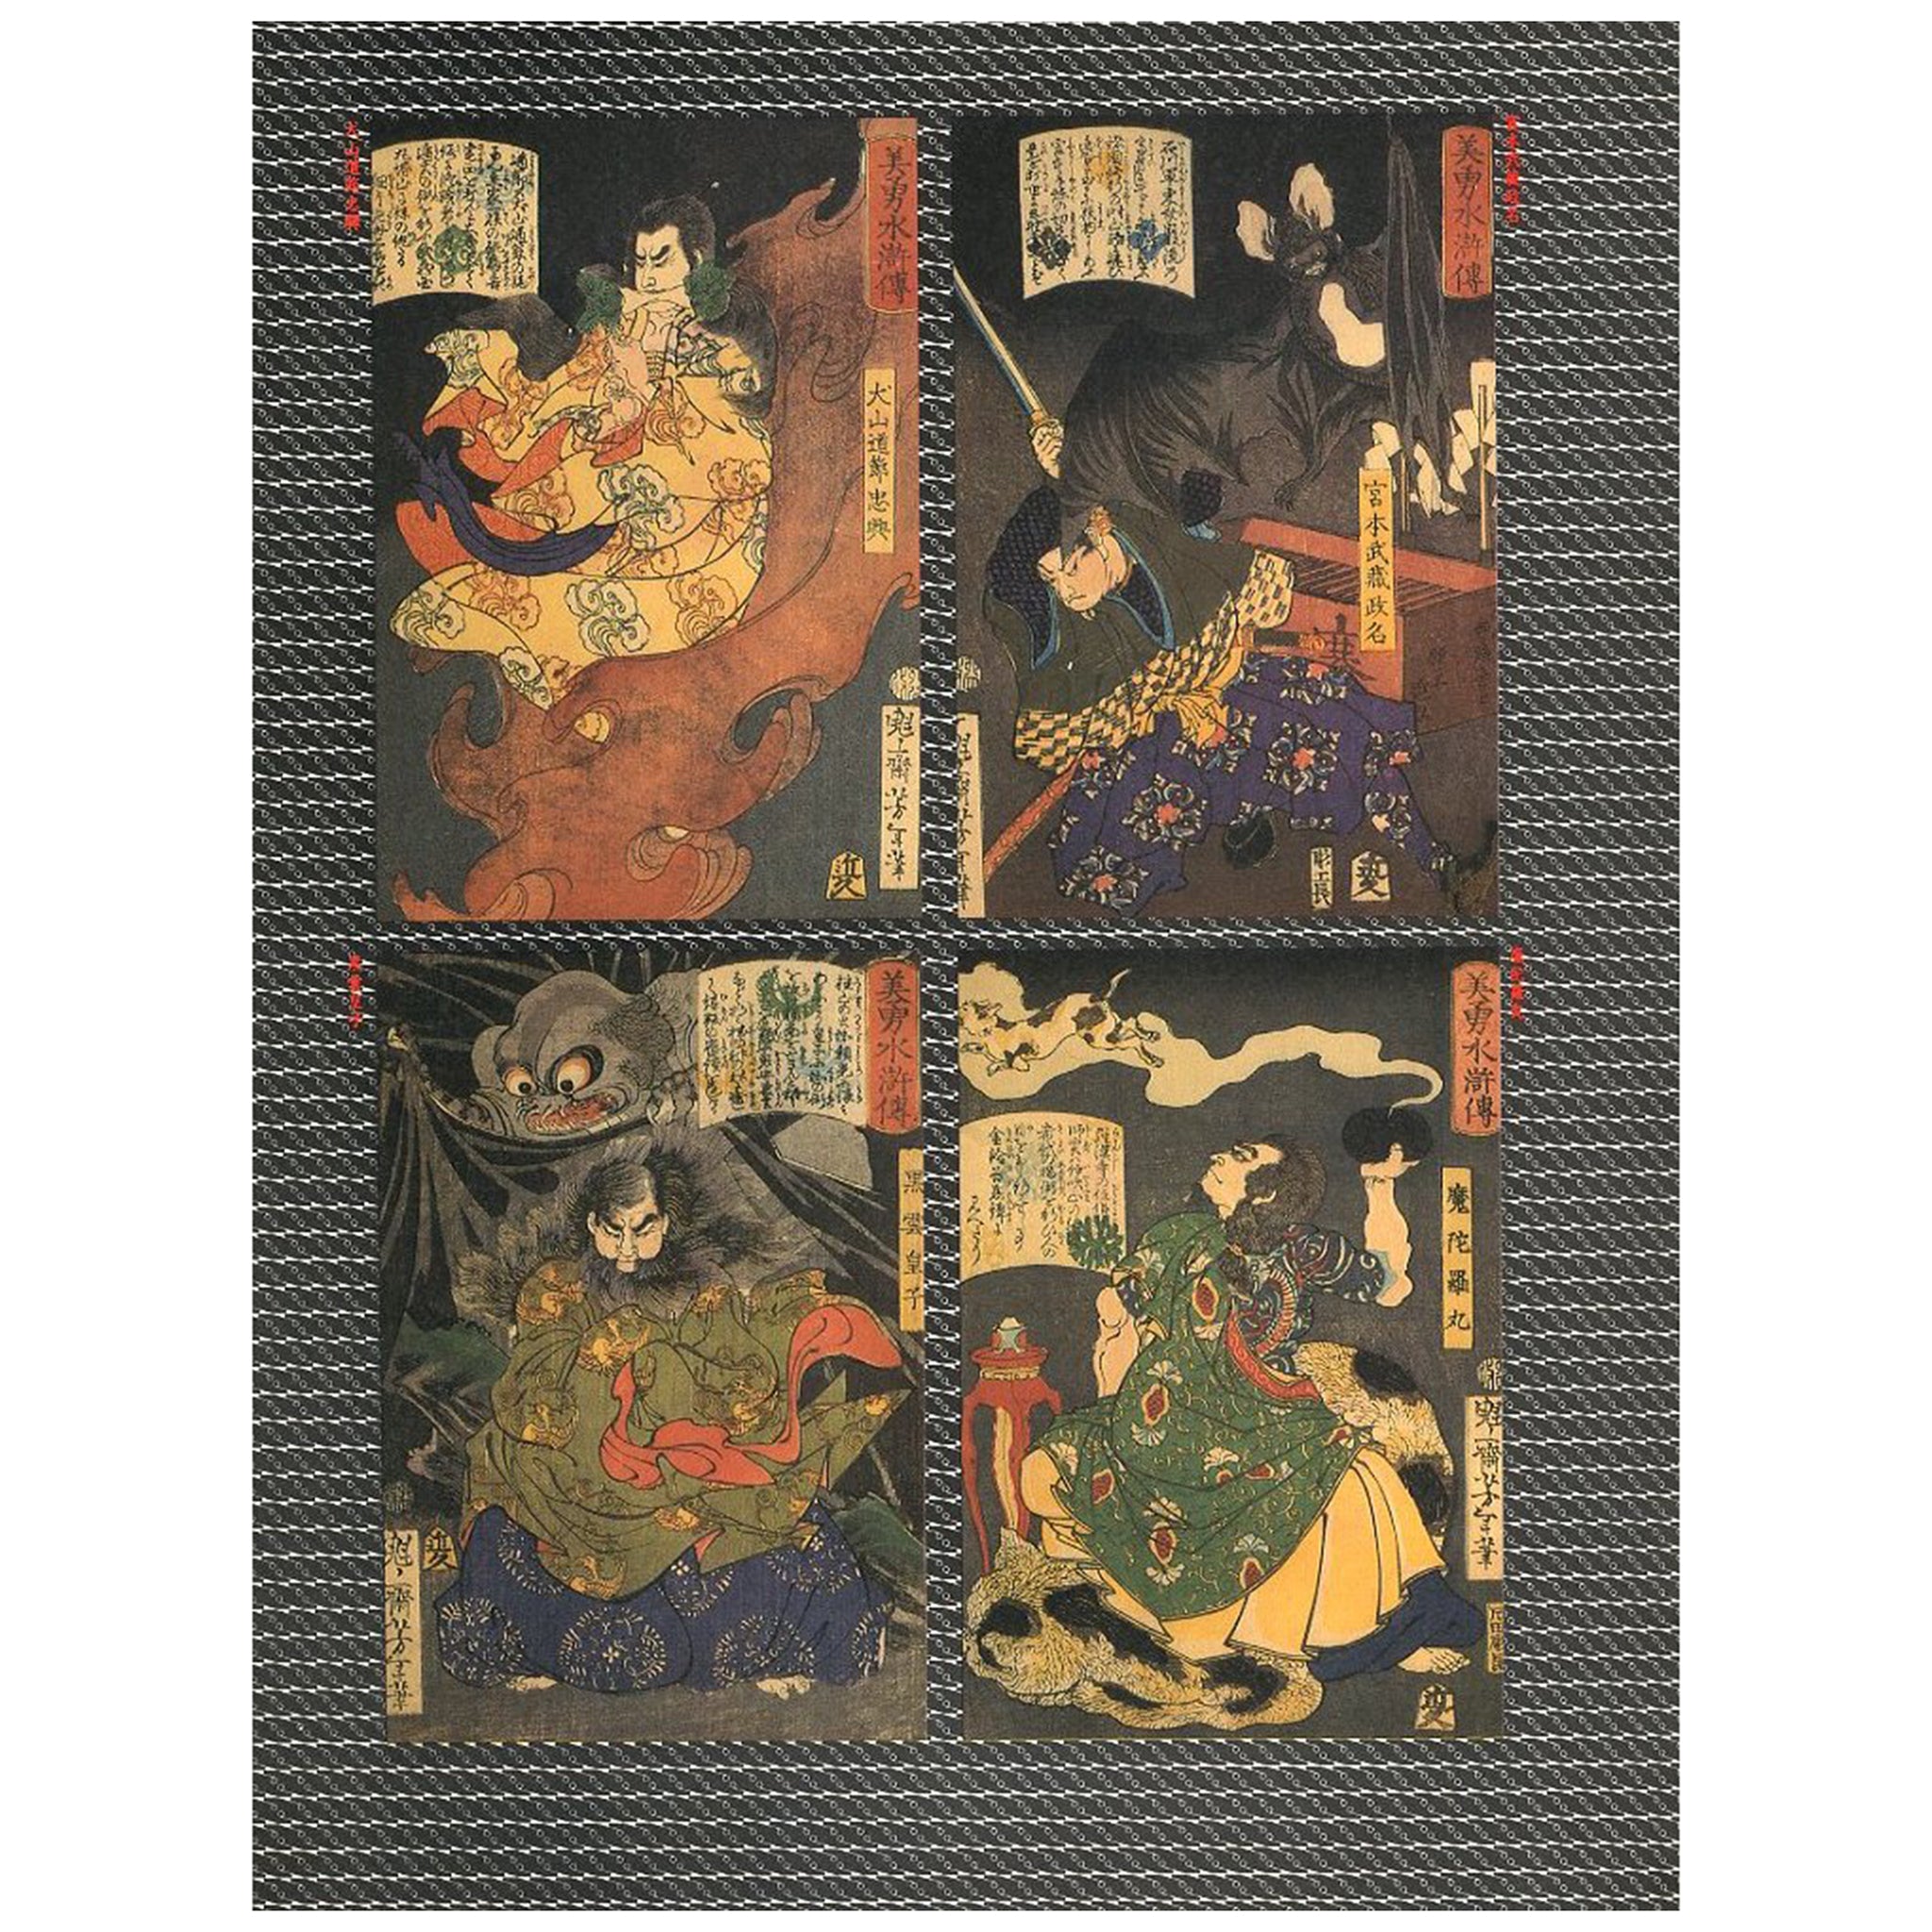 芳年―狂懐の神々 / 編集・装丁:横尾忠則 | 198201111959 | GR8